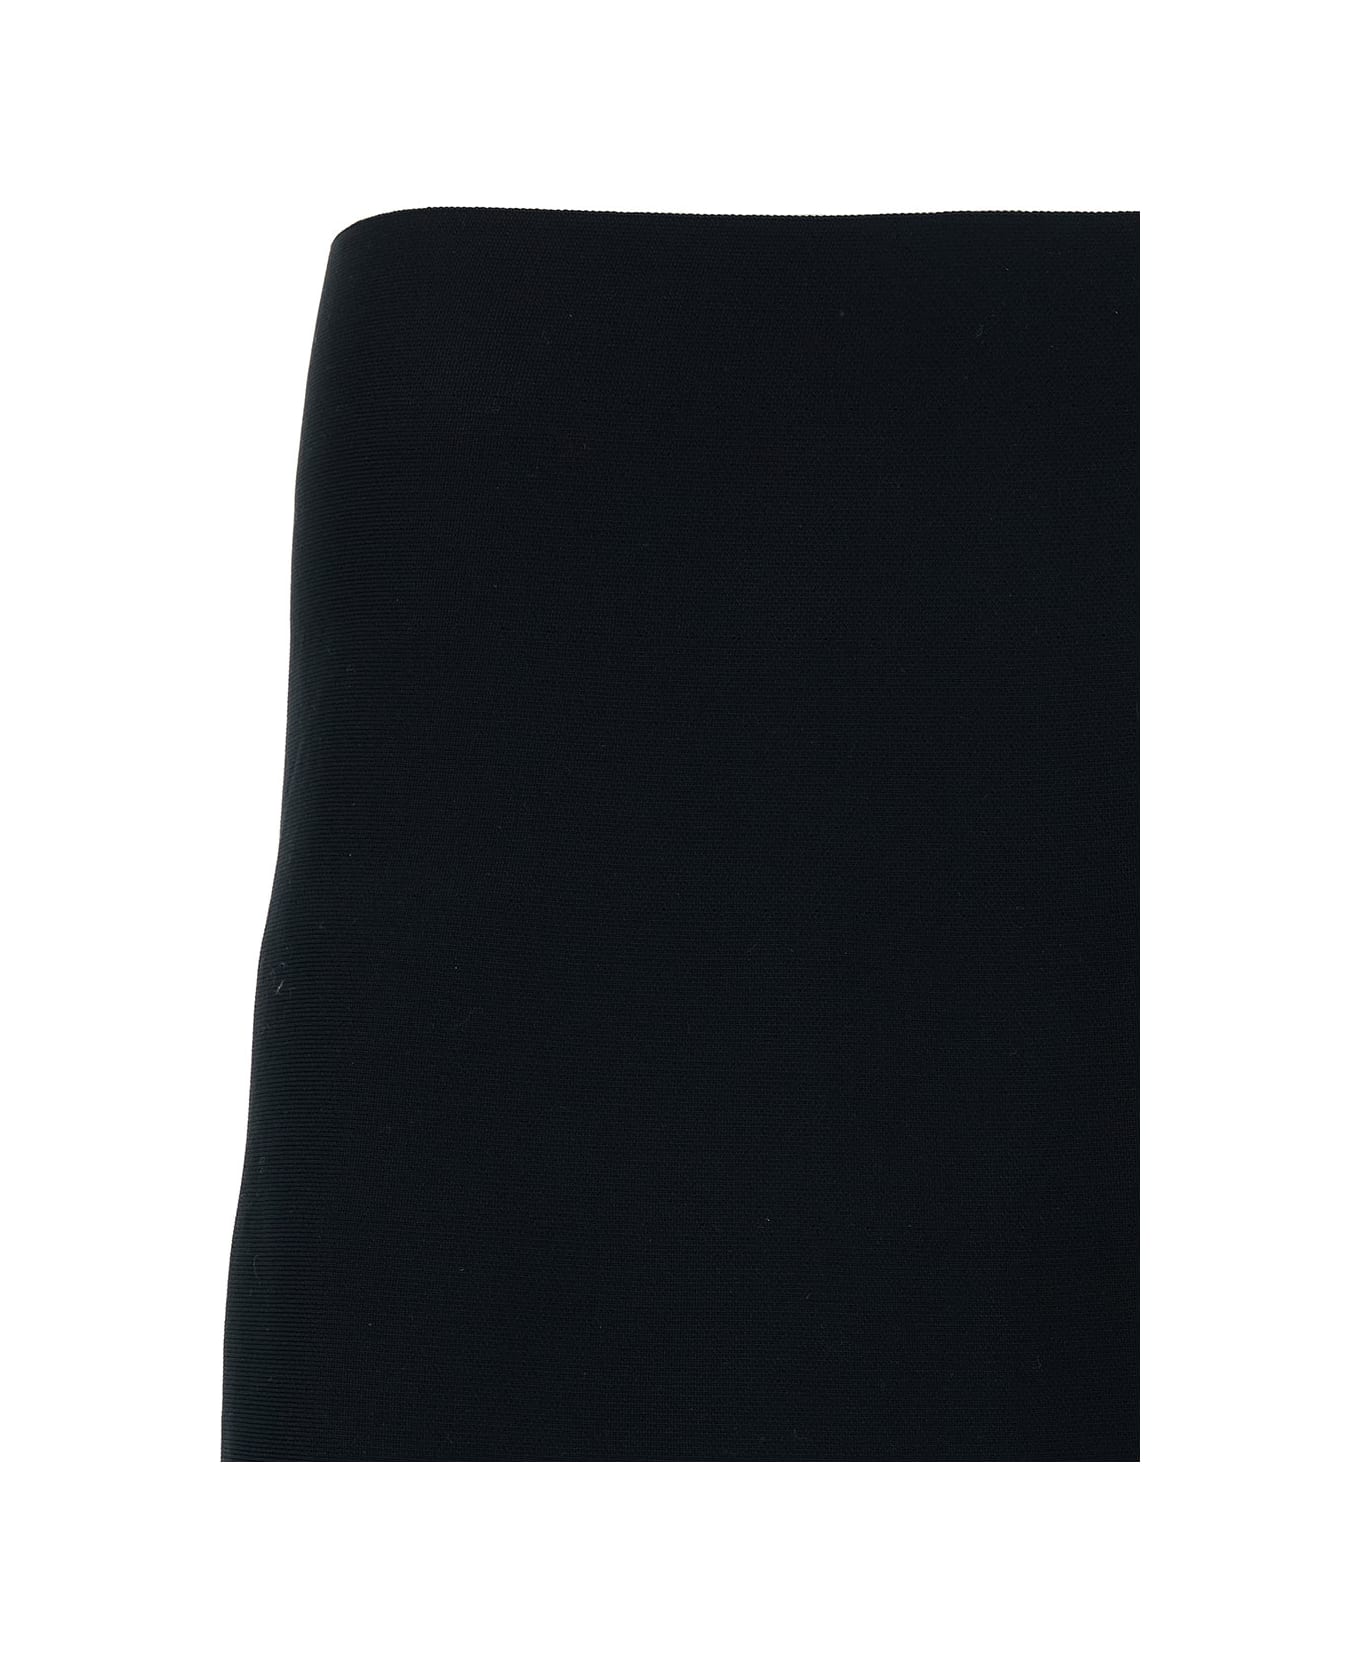 Jil Sander Mini Black Skirt With Regular Waist In Stretch Fabric Woman - Black スカート